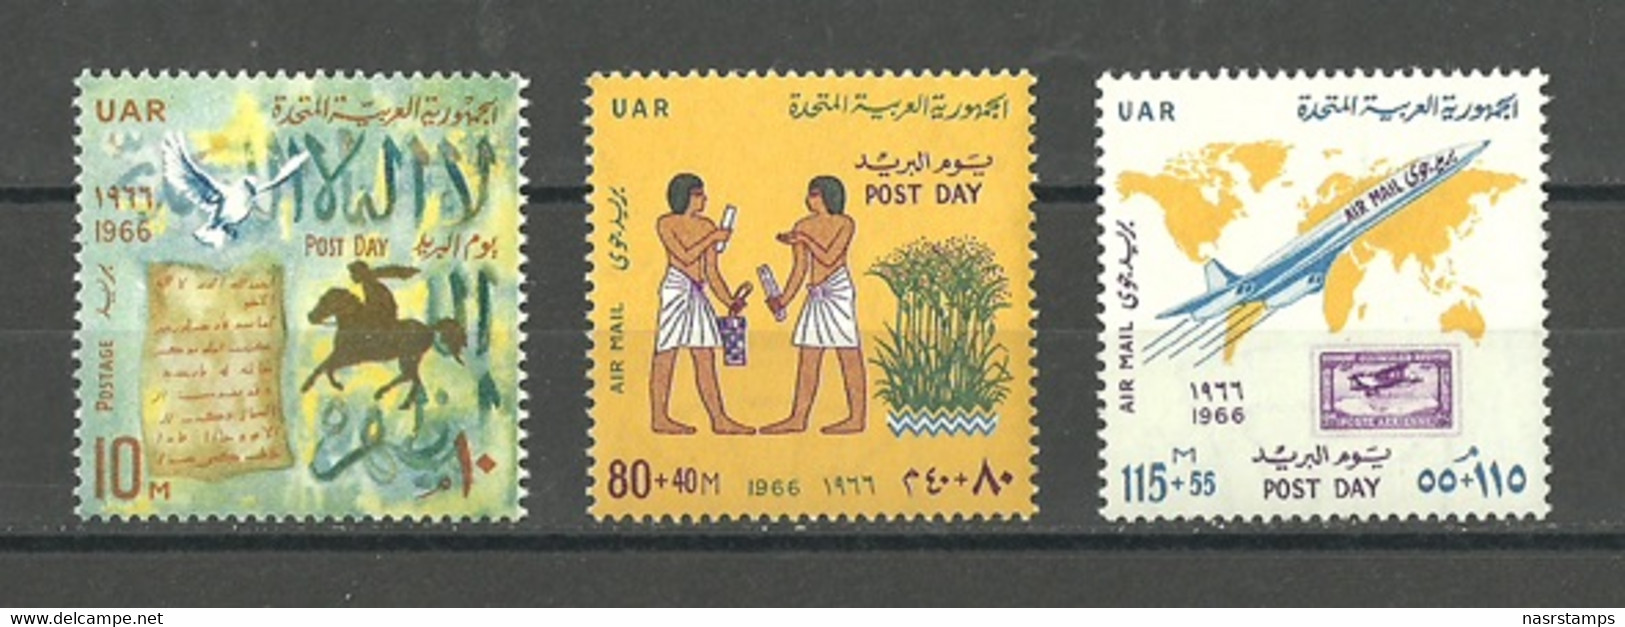 Egypt - 1966 - ( Post Day ) - MNH (**) - Egyptology